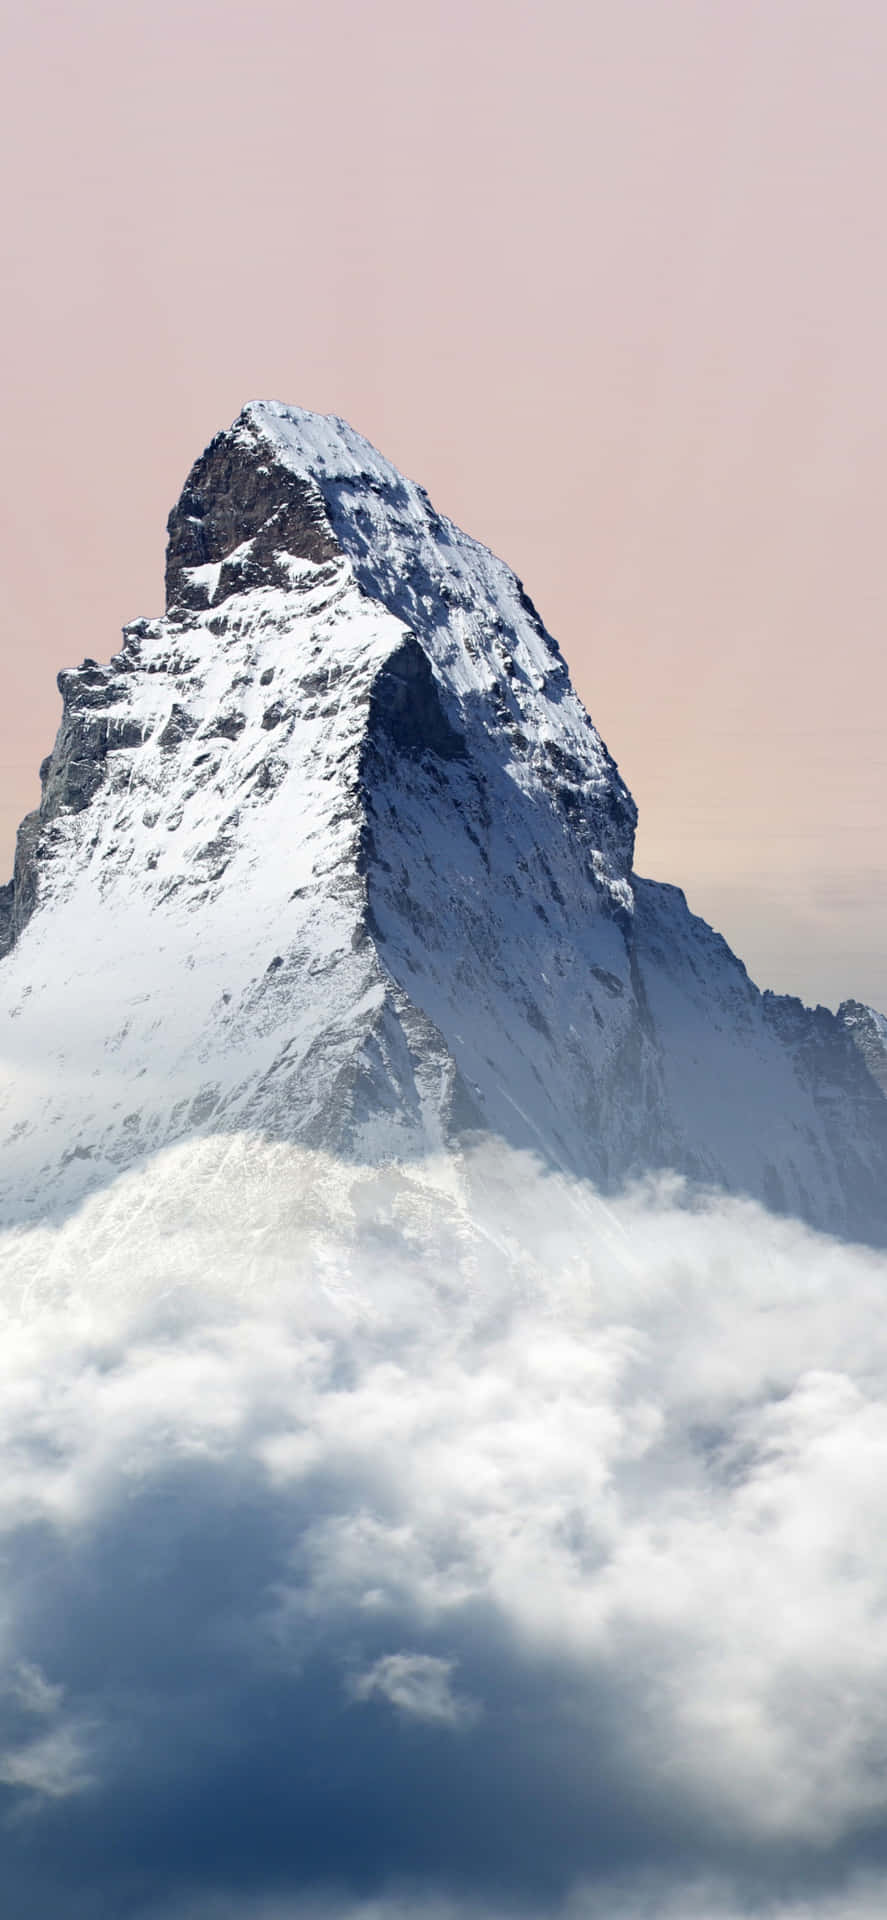 Matterhornbergetöver Molnen. Wallpaper